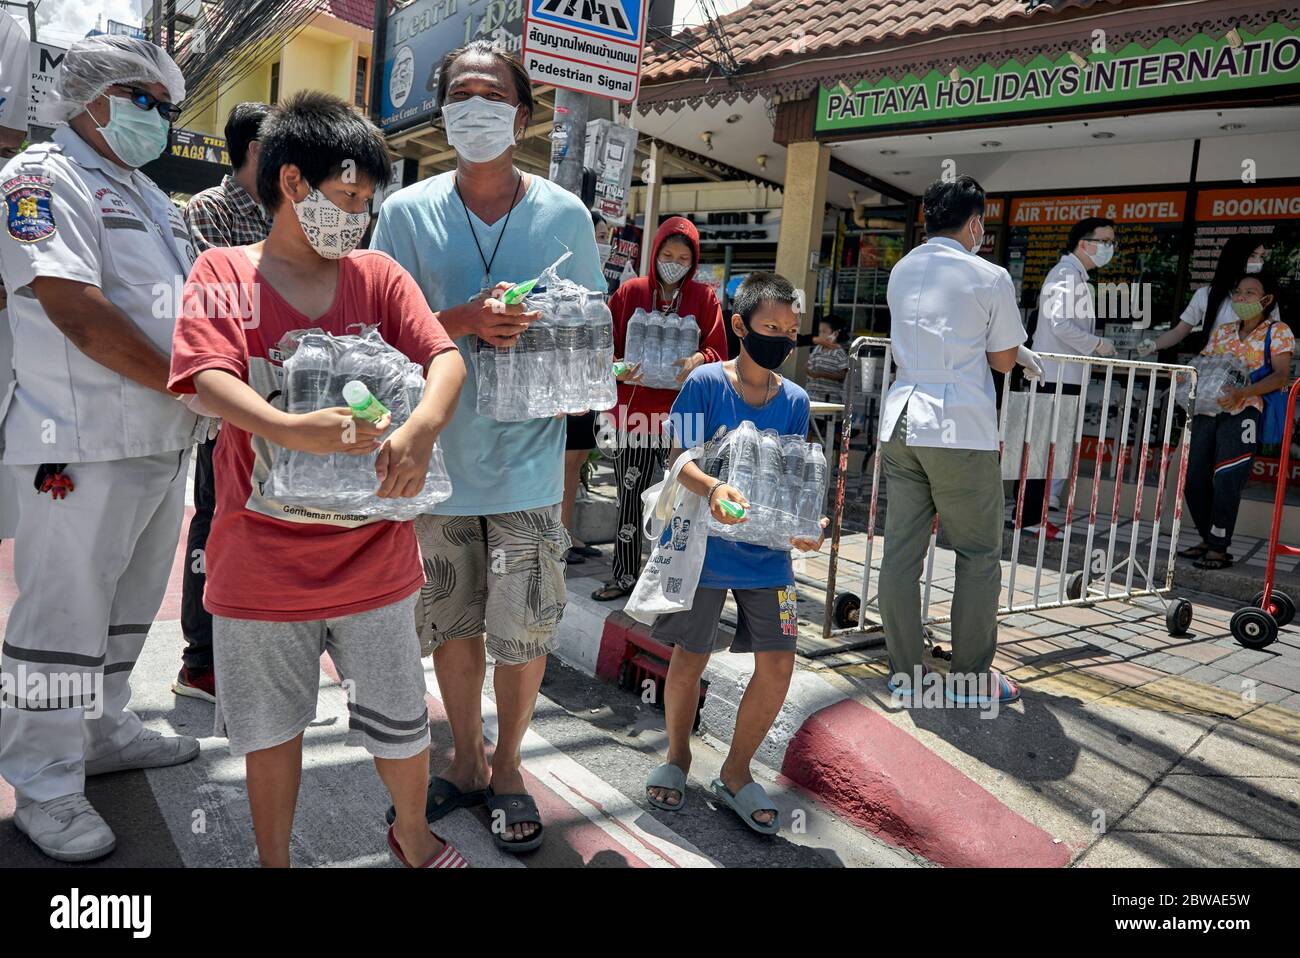 Covid-19 Lebensmittel. Kostenlose Nahrungsmittelüberreichung an Menschen in Not aufgrund von Einkommensverlusten durch Coronavirus, die von lokalen Unternehmen in Pattaya Thailand Asien finanziert werden Stockfoto